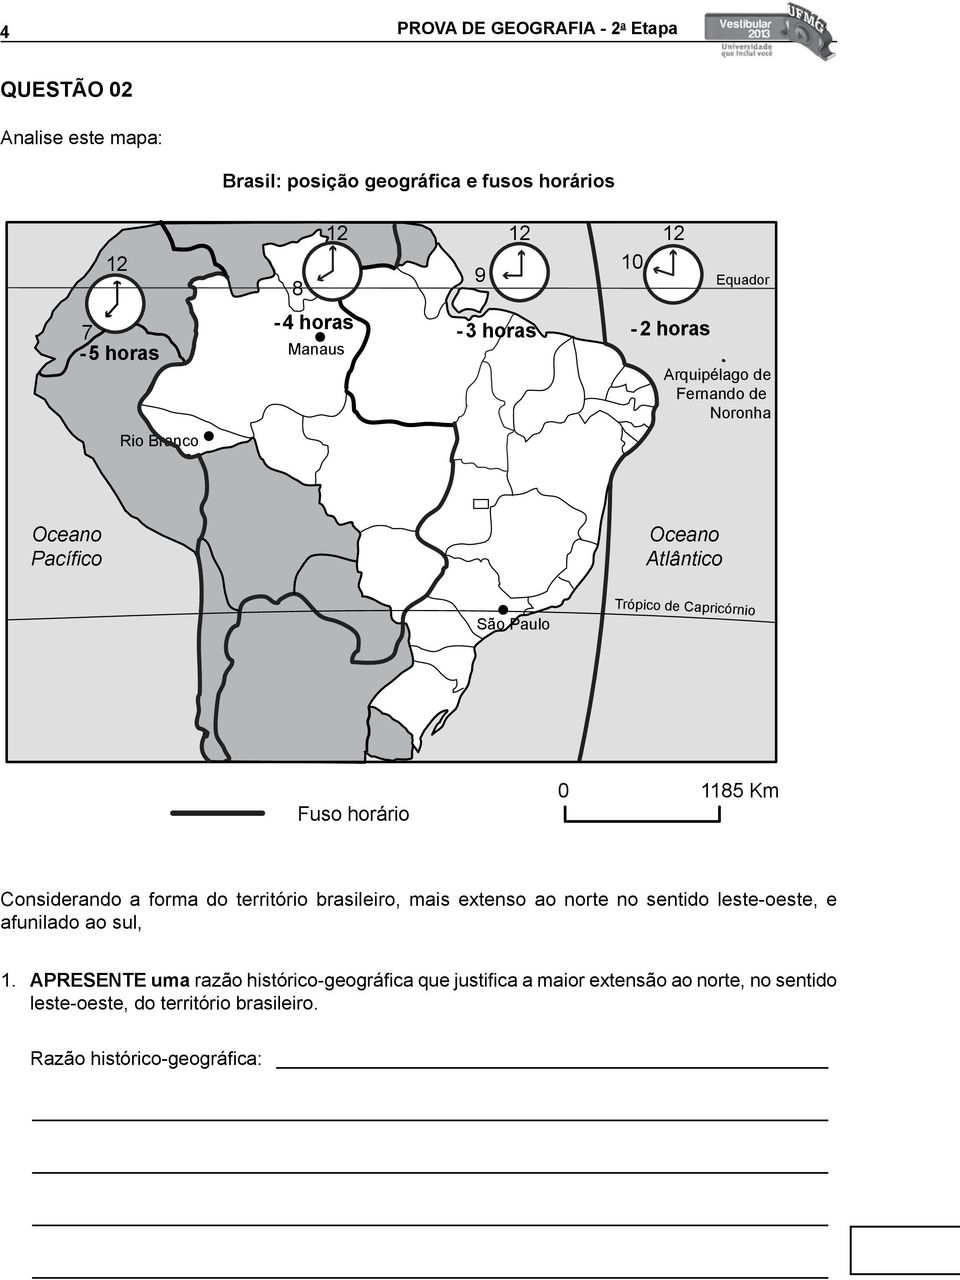 Fuso horário 0 1185 Km Considerando a forma do território brasileiro, mais extenso ao norte no sentido leste-oeste, e afunilado ao sul, 1.